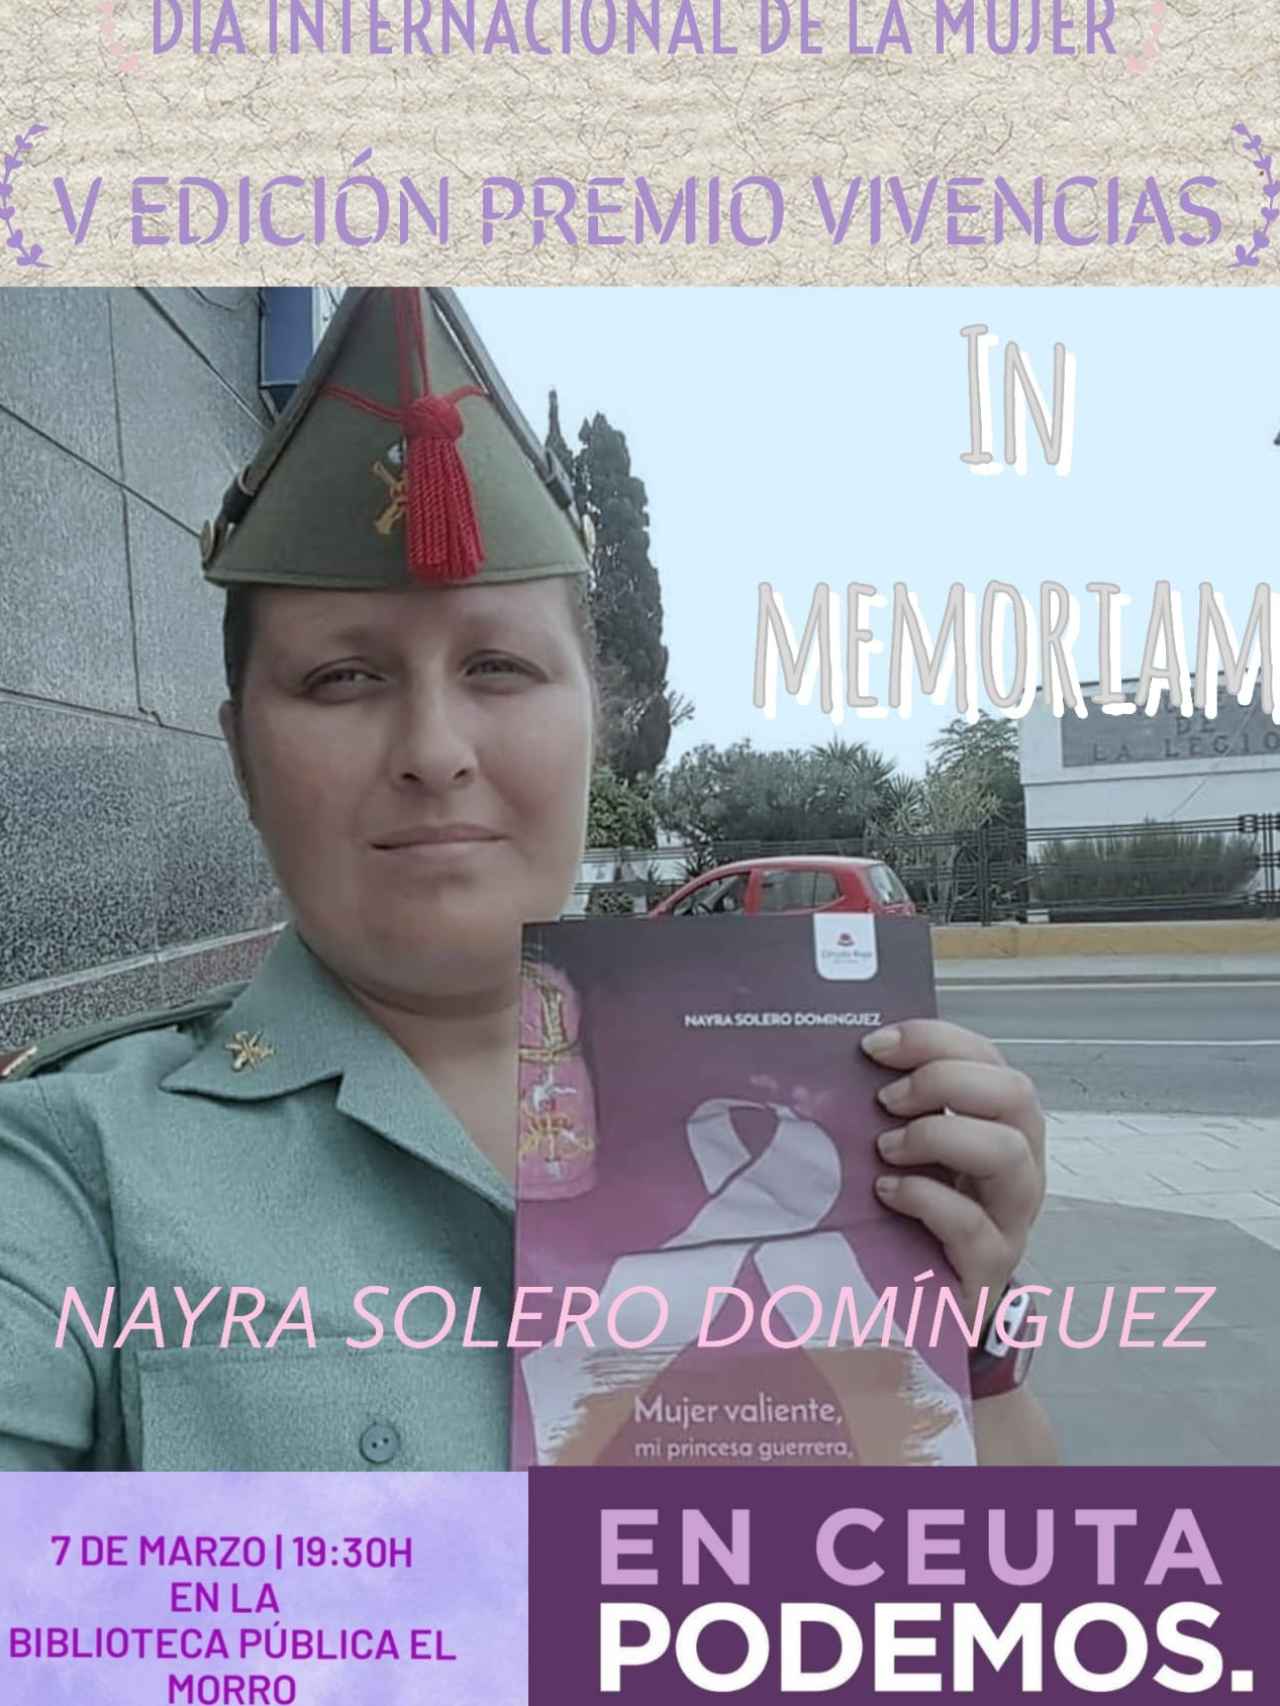 El cartel publicado por En Ceuta Podemos para anunciar el premio a la dama legionaria.